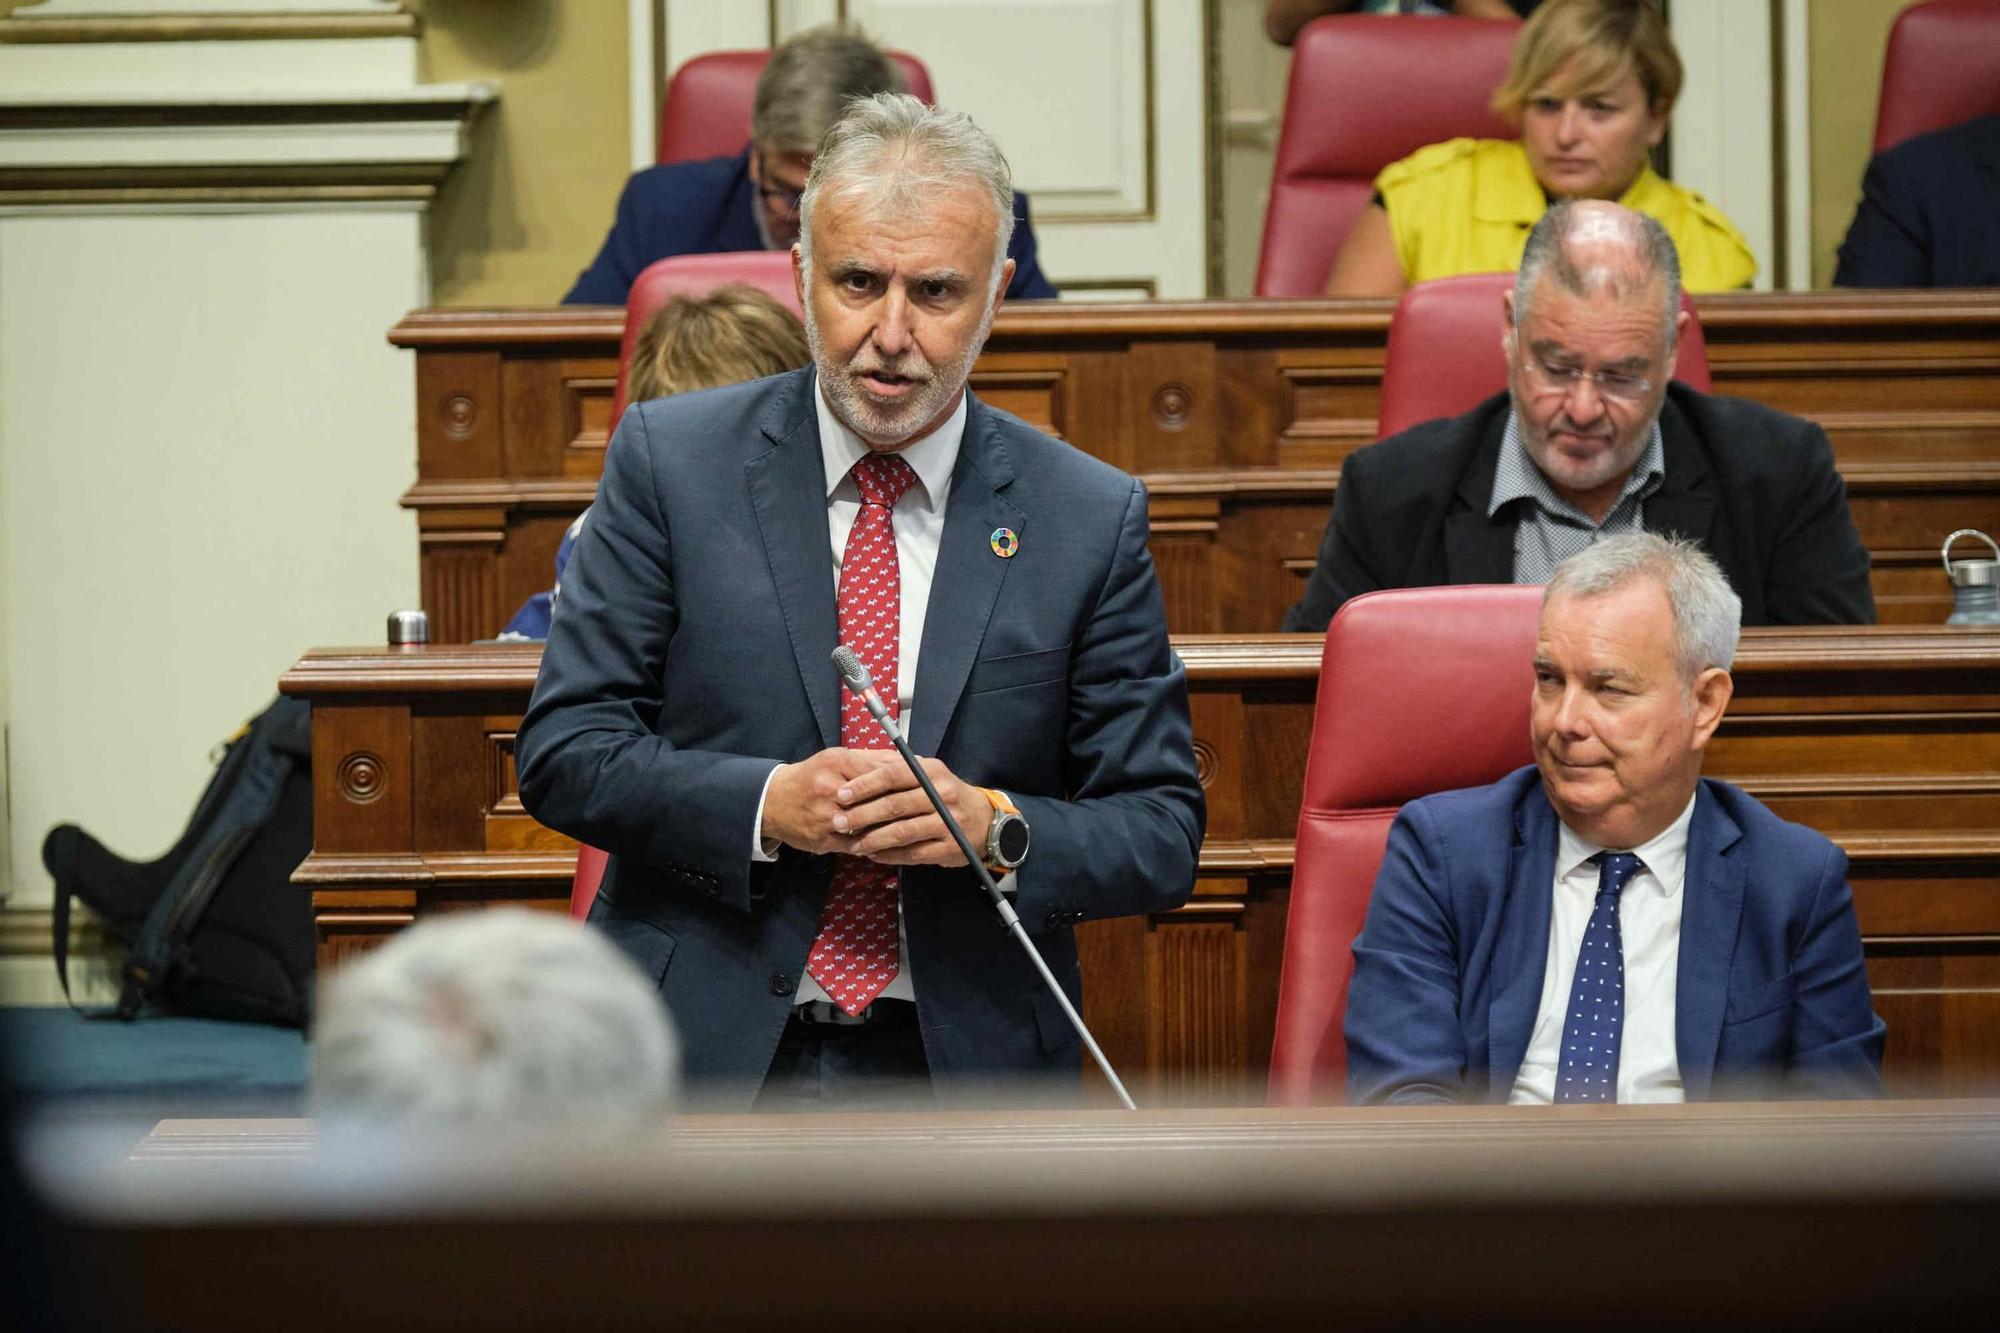 Pleno del Parlamento de Canarias